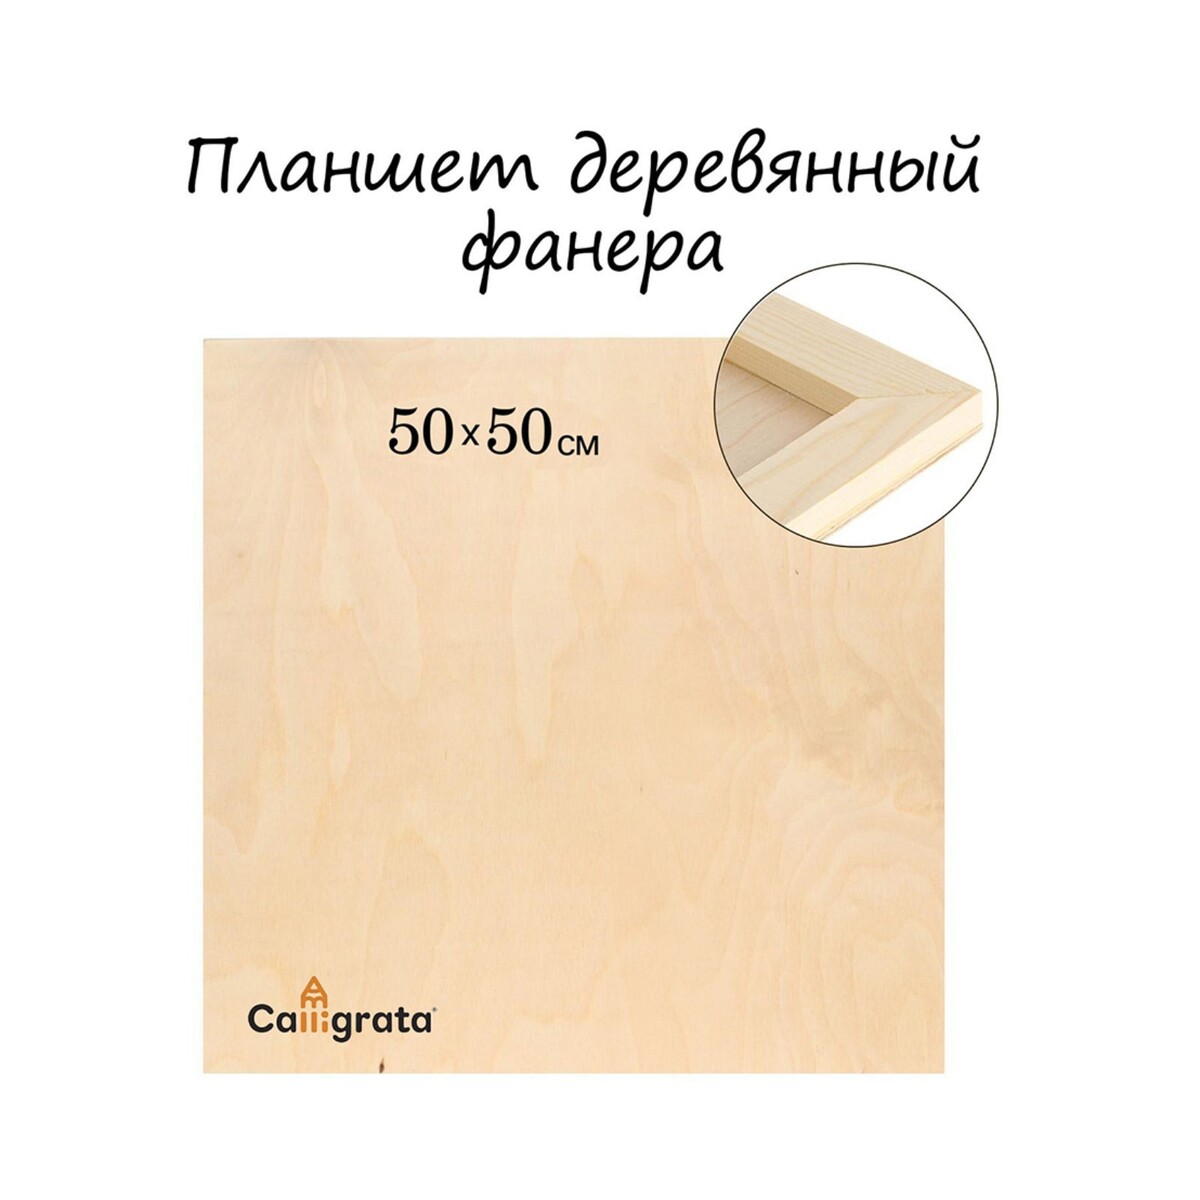 Планшет деревянный 50 х 50 х 2 см, фанера (для рисования эпоксидной смолой) Calligrata 03305269 - фото 1